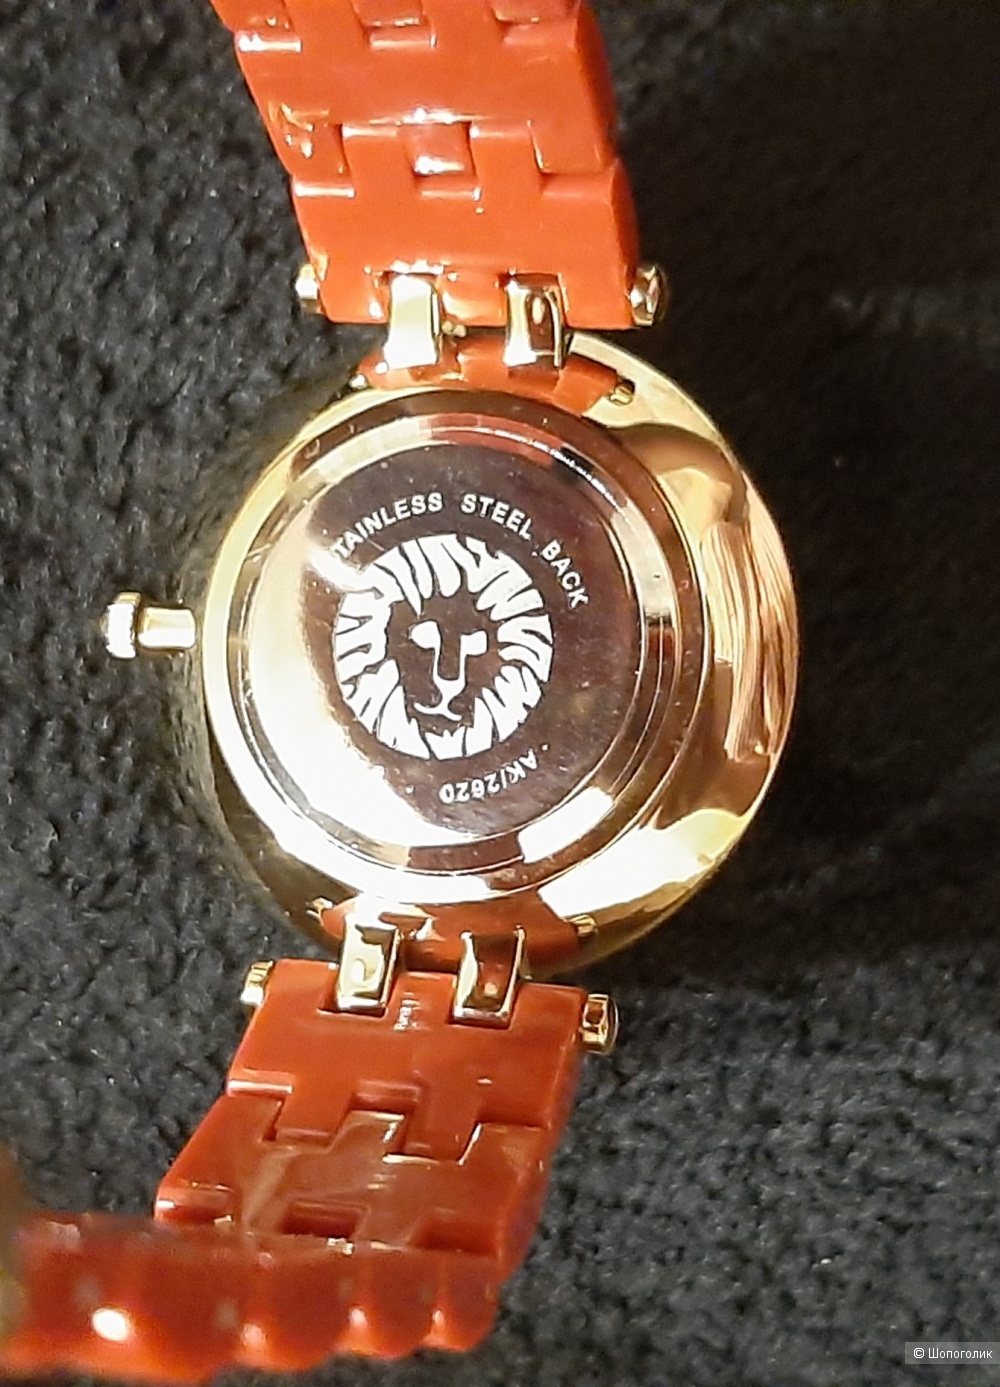 Часы женские  Anne Klein, one size